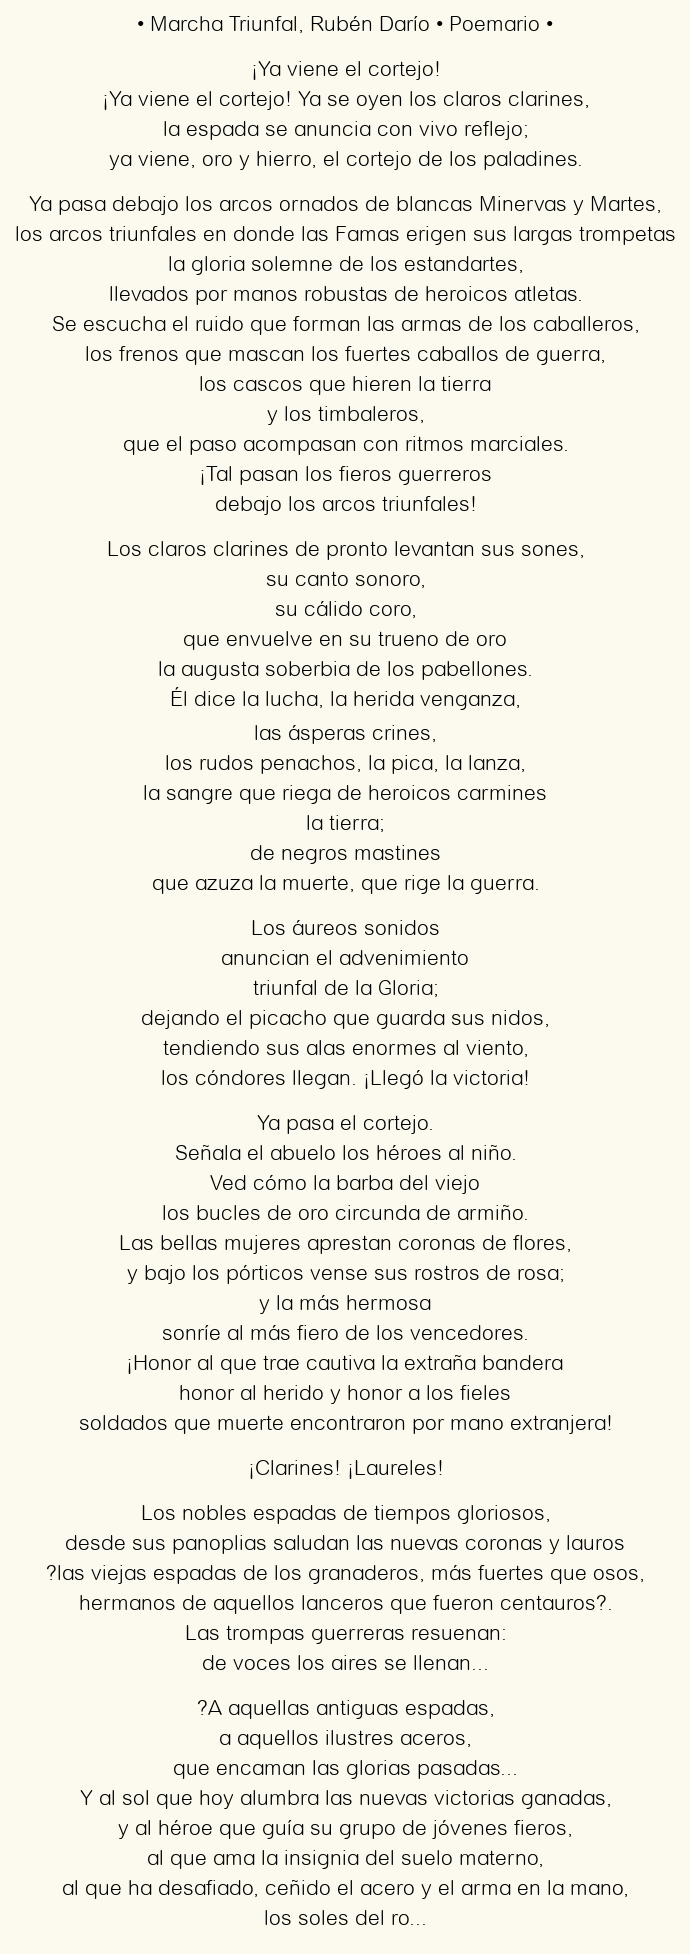 Imagen con el poema Marcha Triunfal, por Rubén Darío